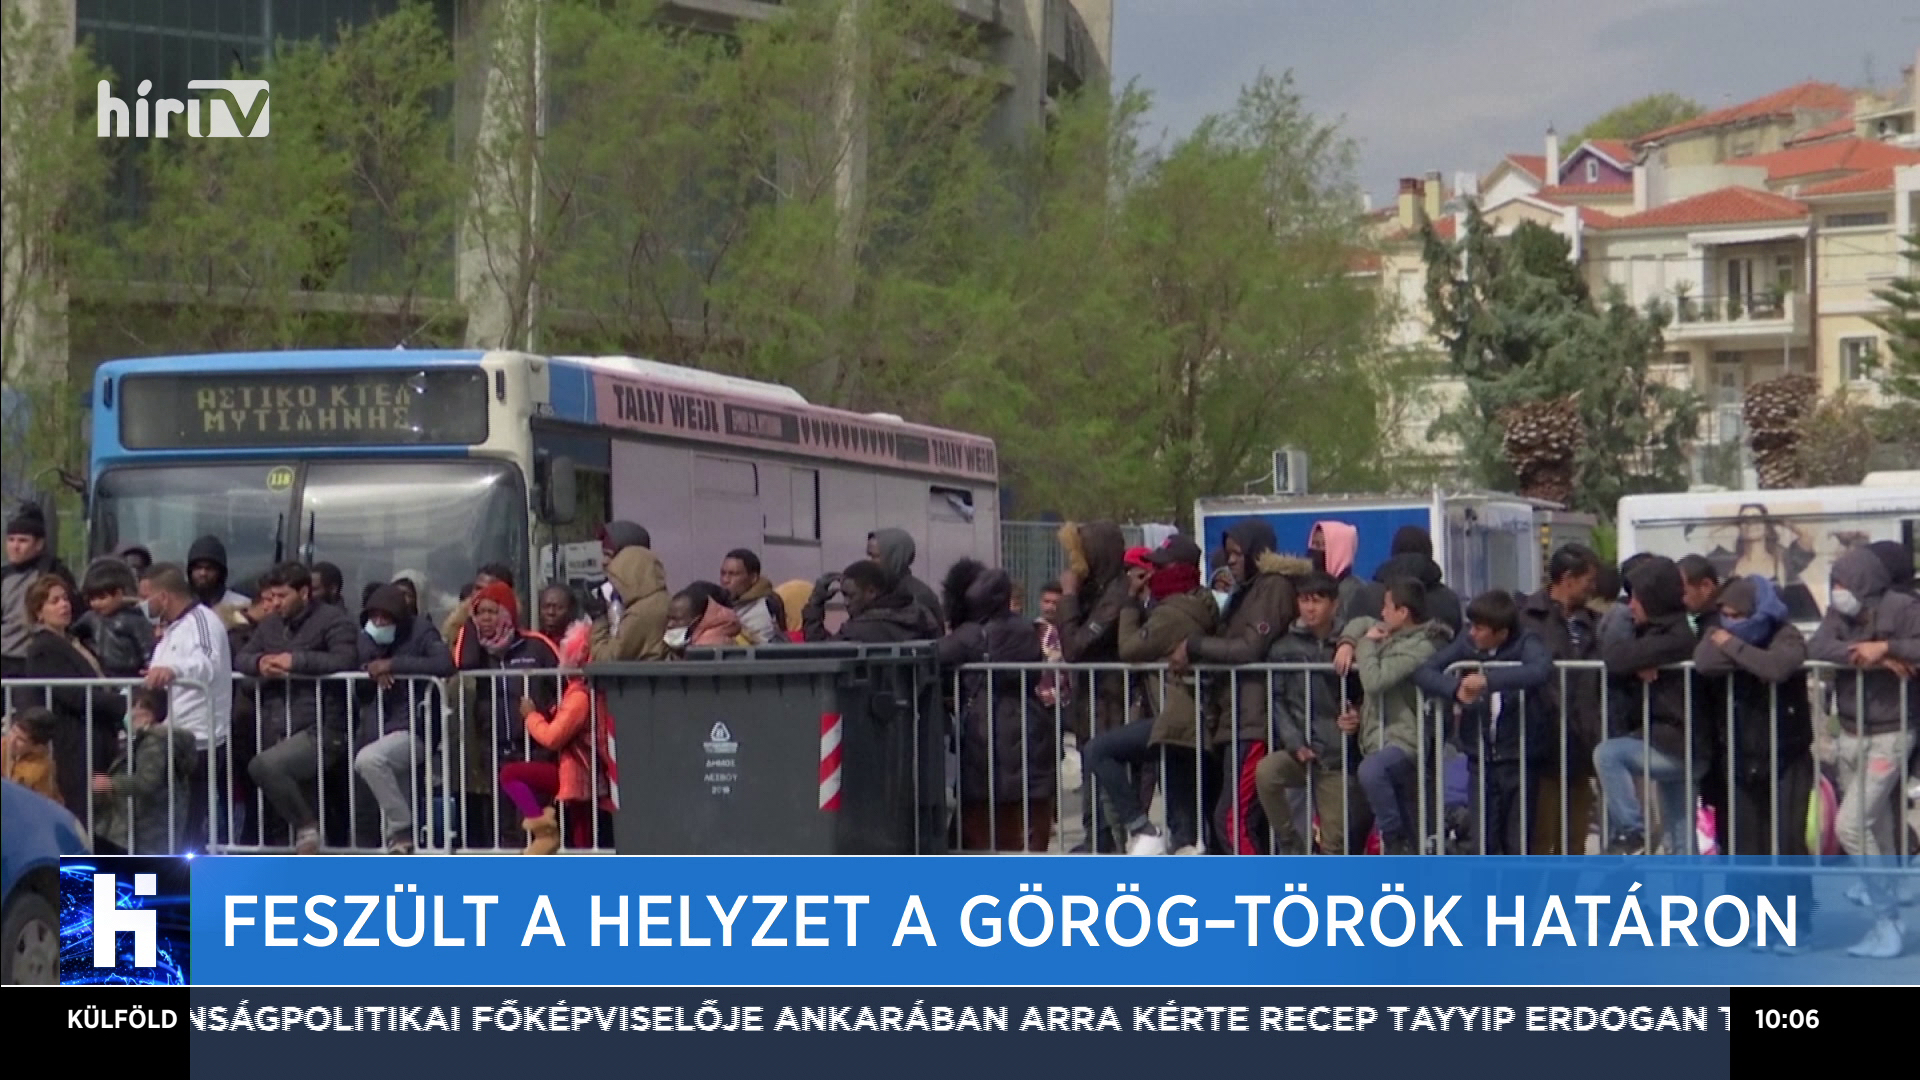 Özönlenek a migránsok Törökországból, de Görögország egyelőre kitart